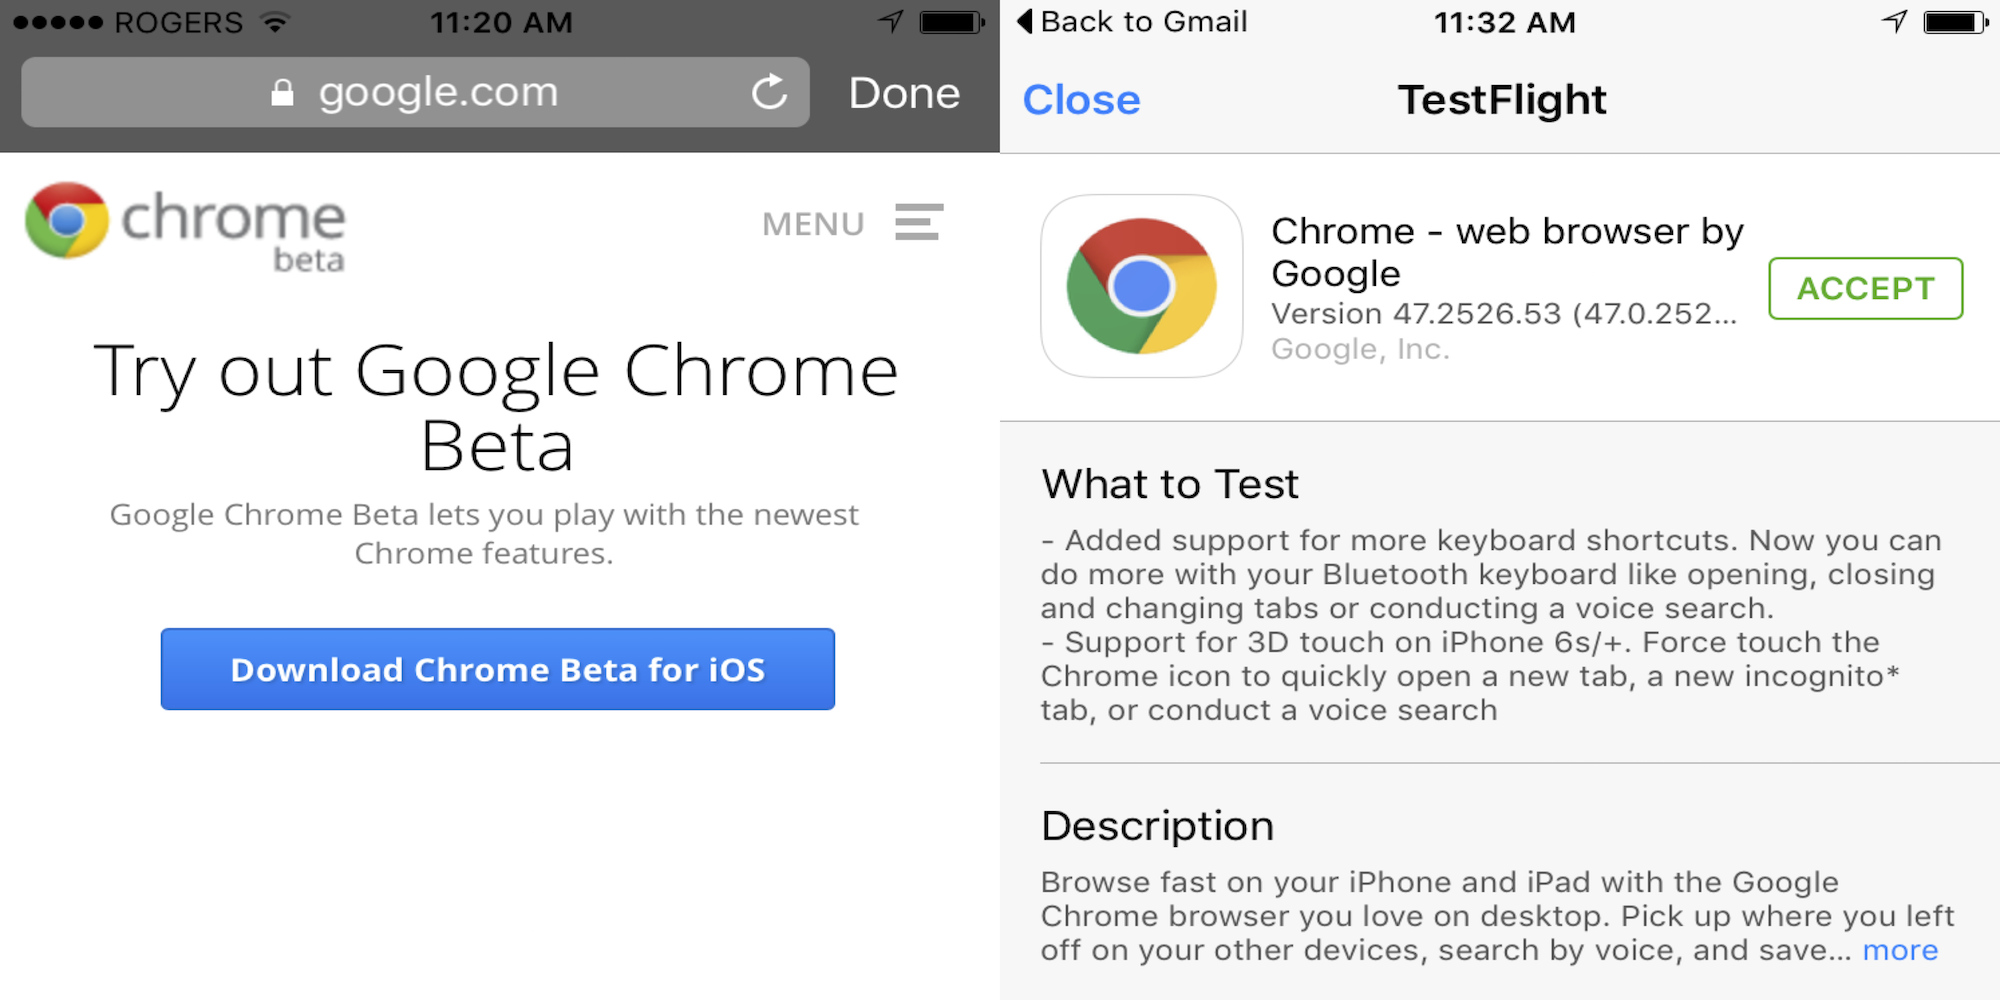 O Google lança discretamente o Chrome beta para iOS através de AppleTestFlight de